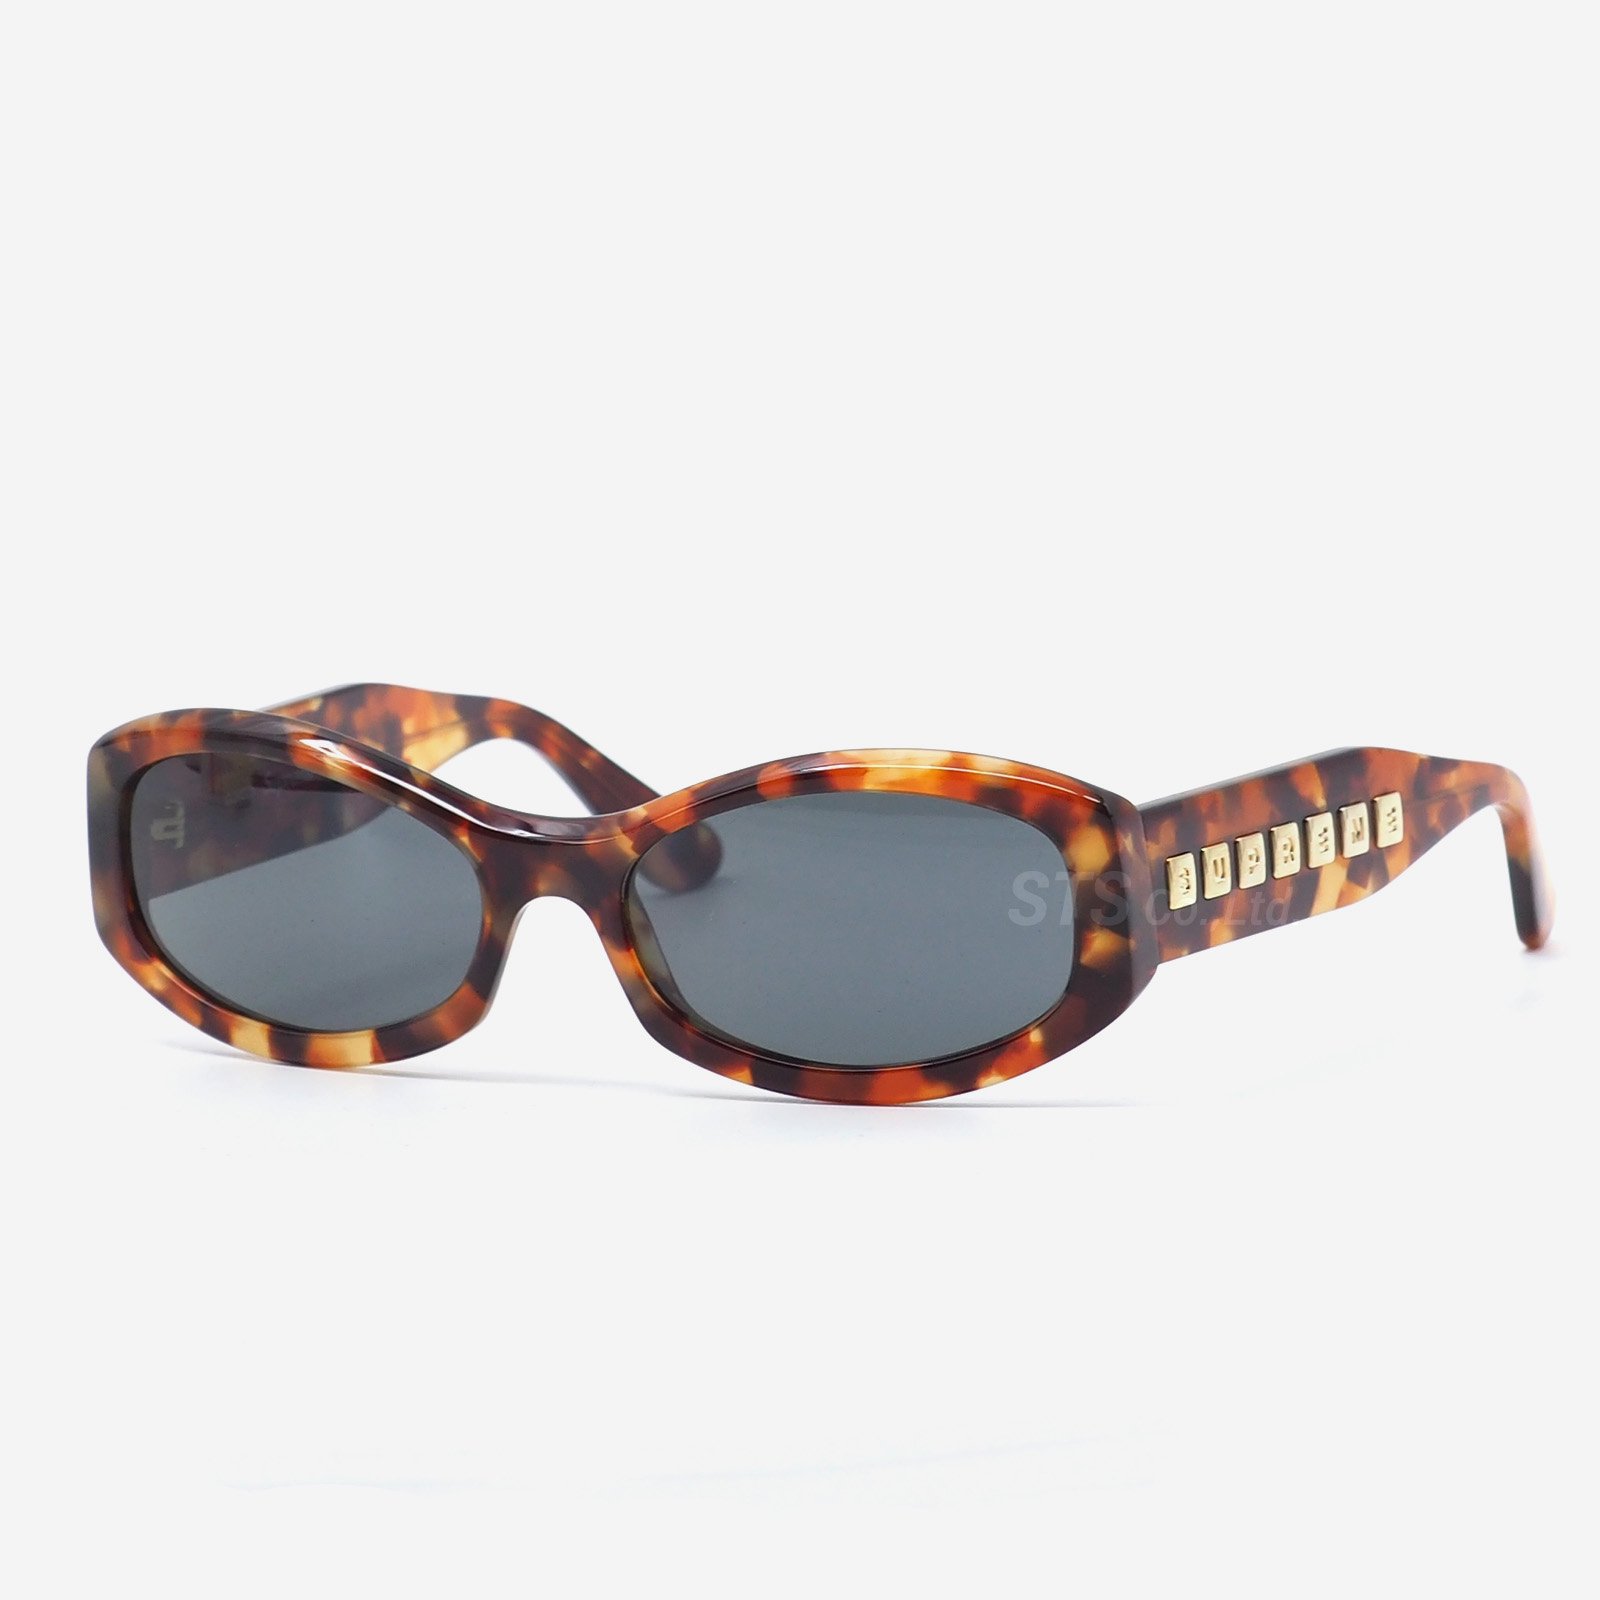 完売品 Supreme サングラス Corso Sunglasses-